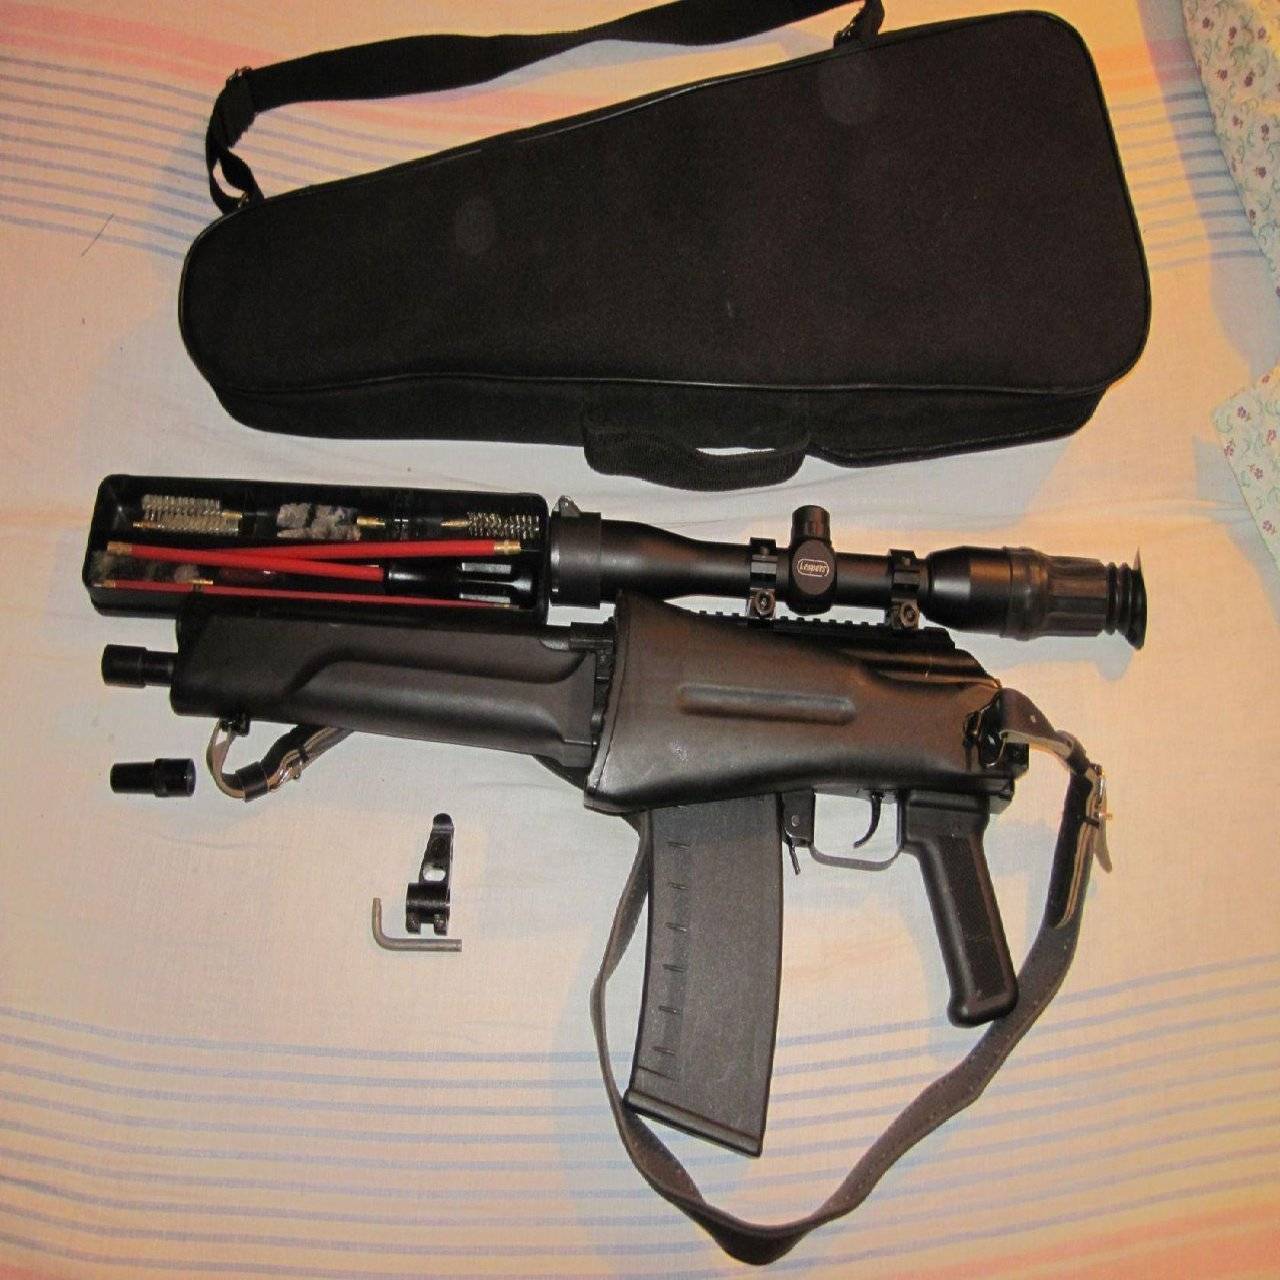 Гладкоствольное ружье Сайга-410С